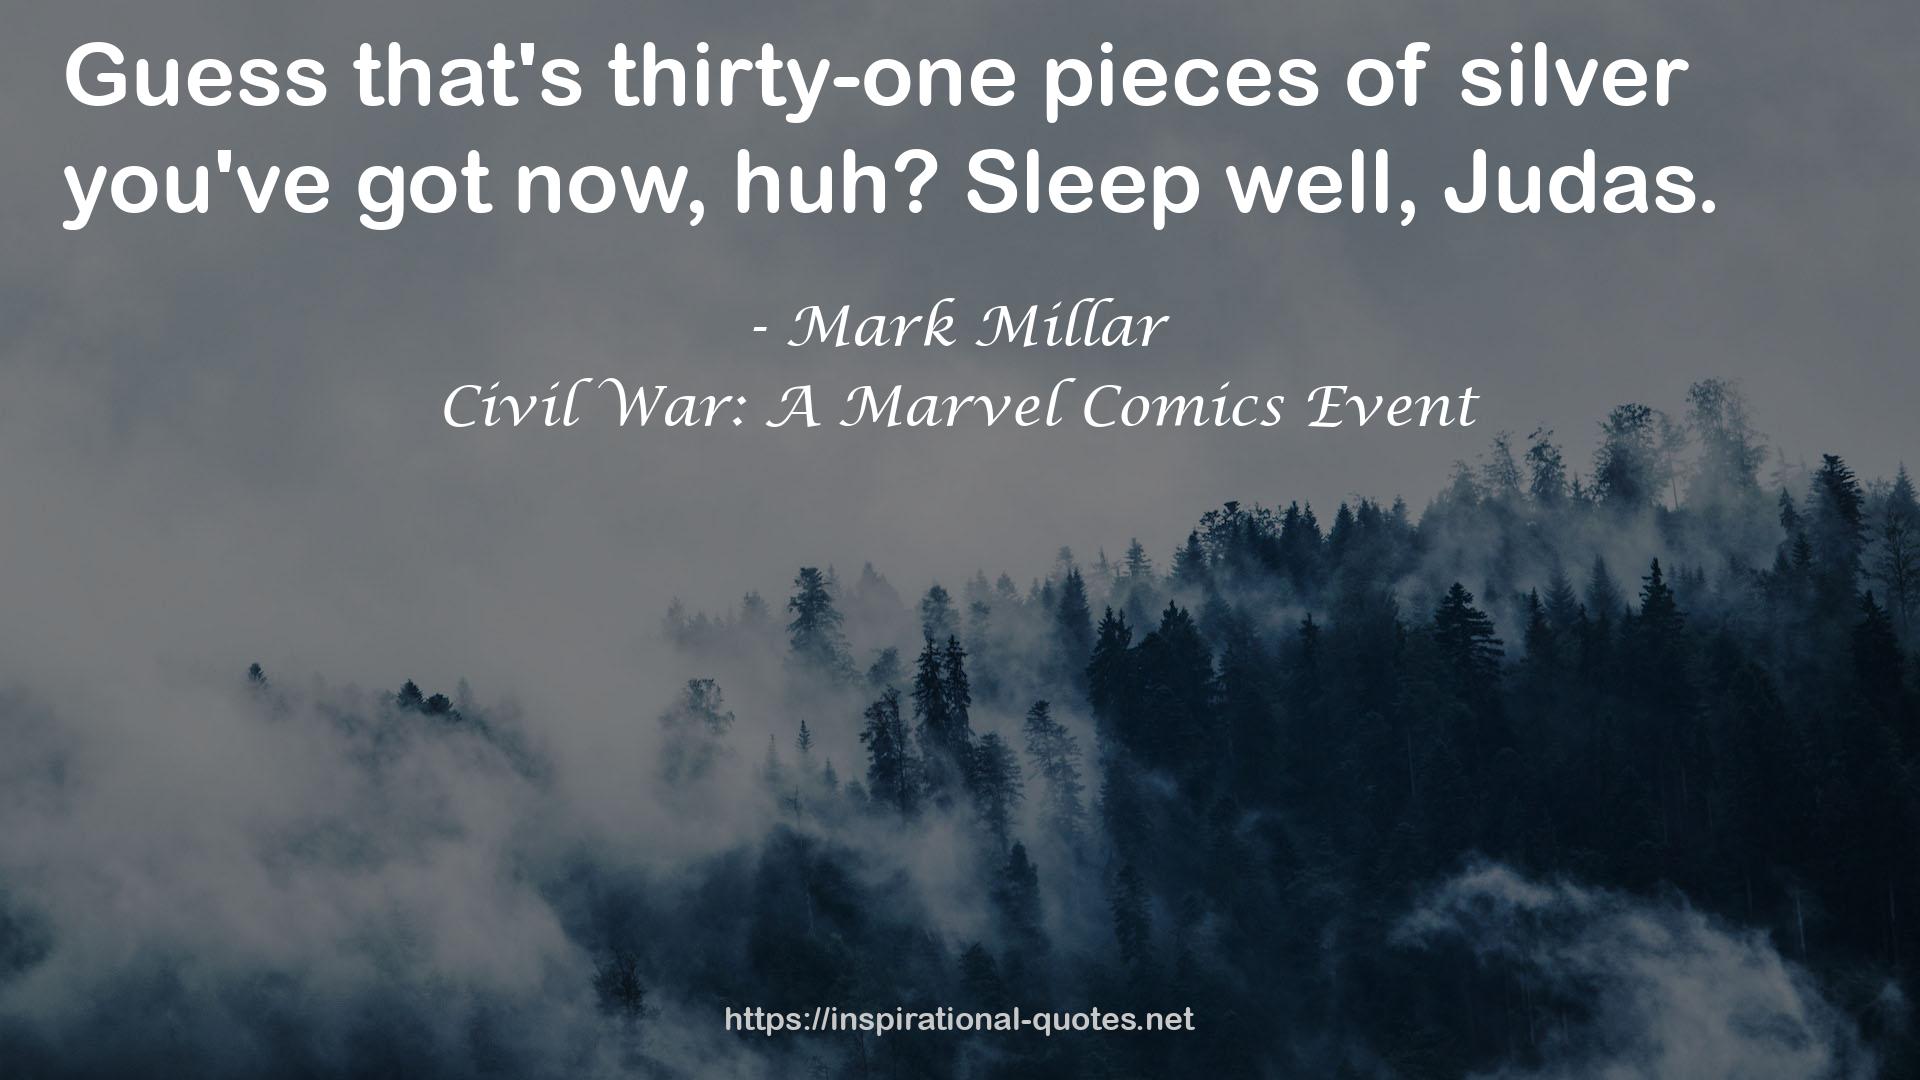 Civil War: A Marvel Comics Event QUOTES